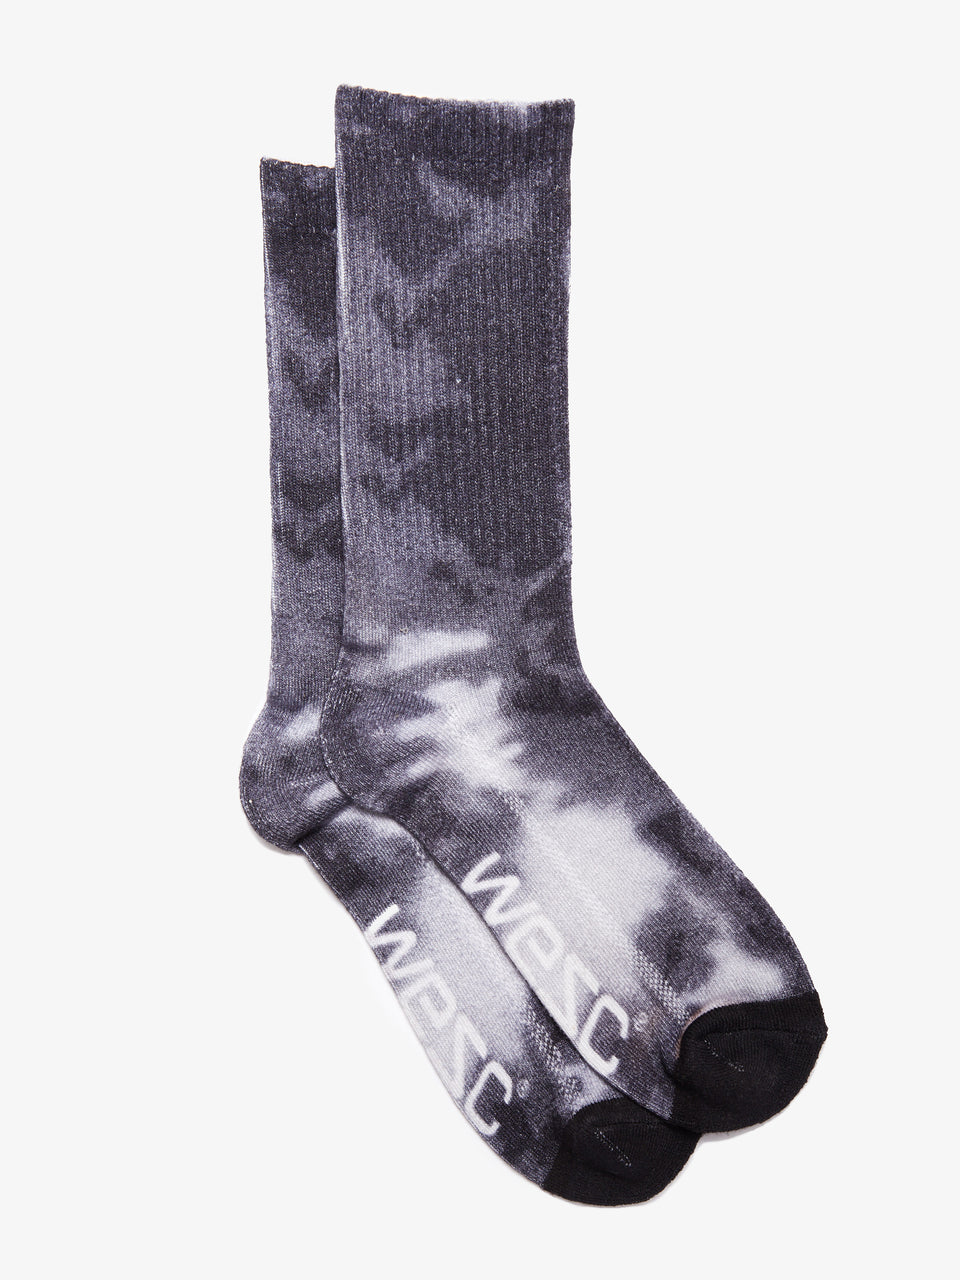 wesc_varion_tie_dye_socks_black